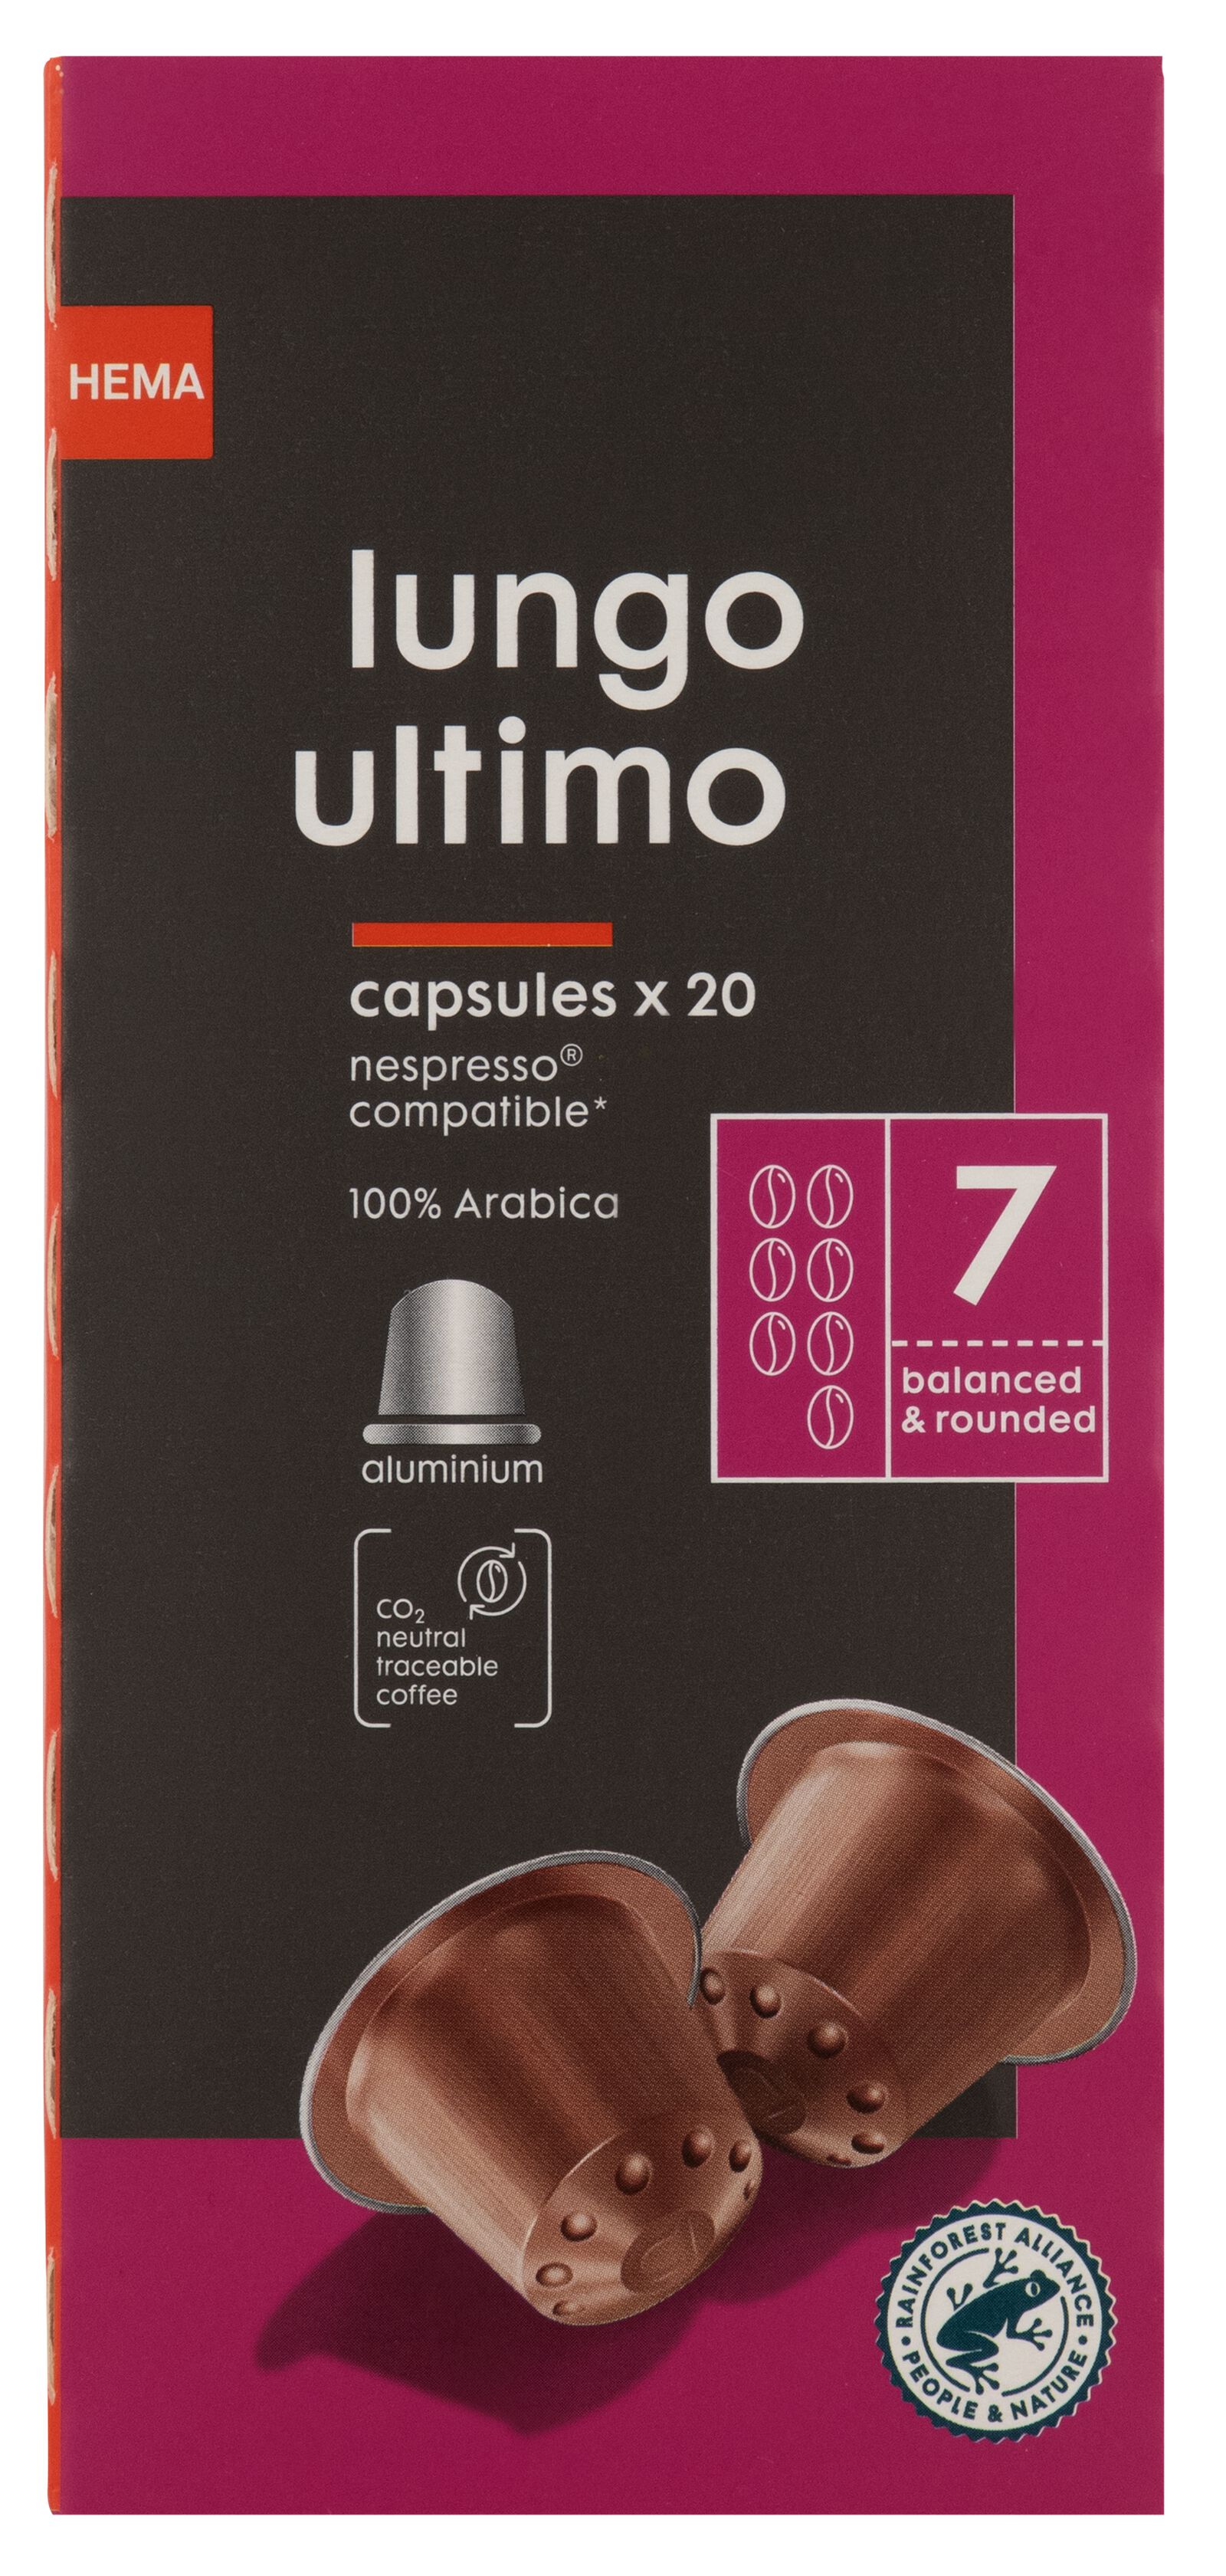 20 capsules de café lungo ultimo - 17180015 - HEMA